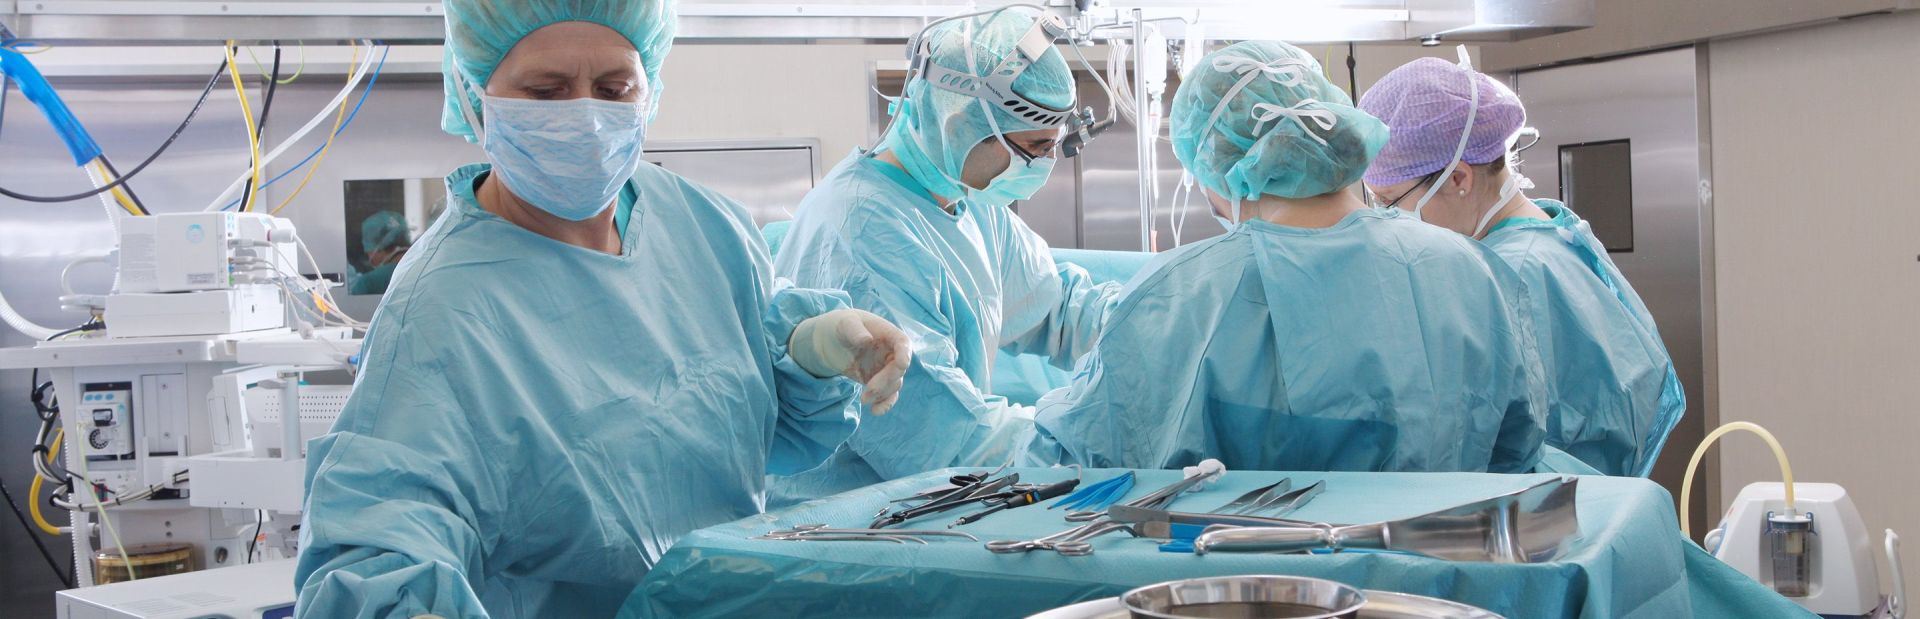 Vier Chirurgen operieren eine Patient:in.